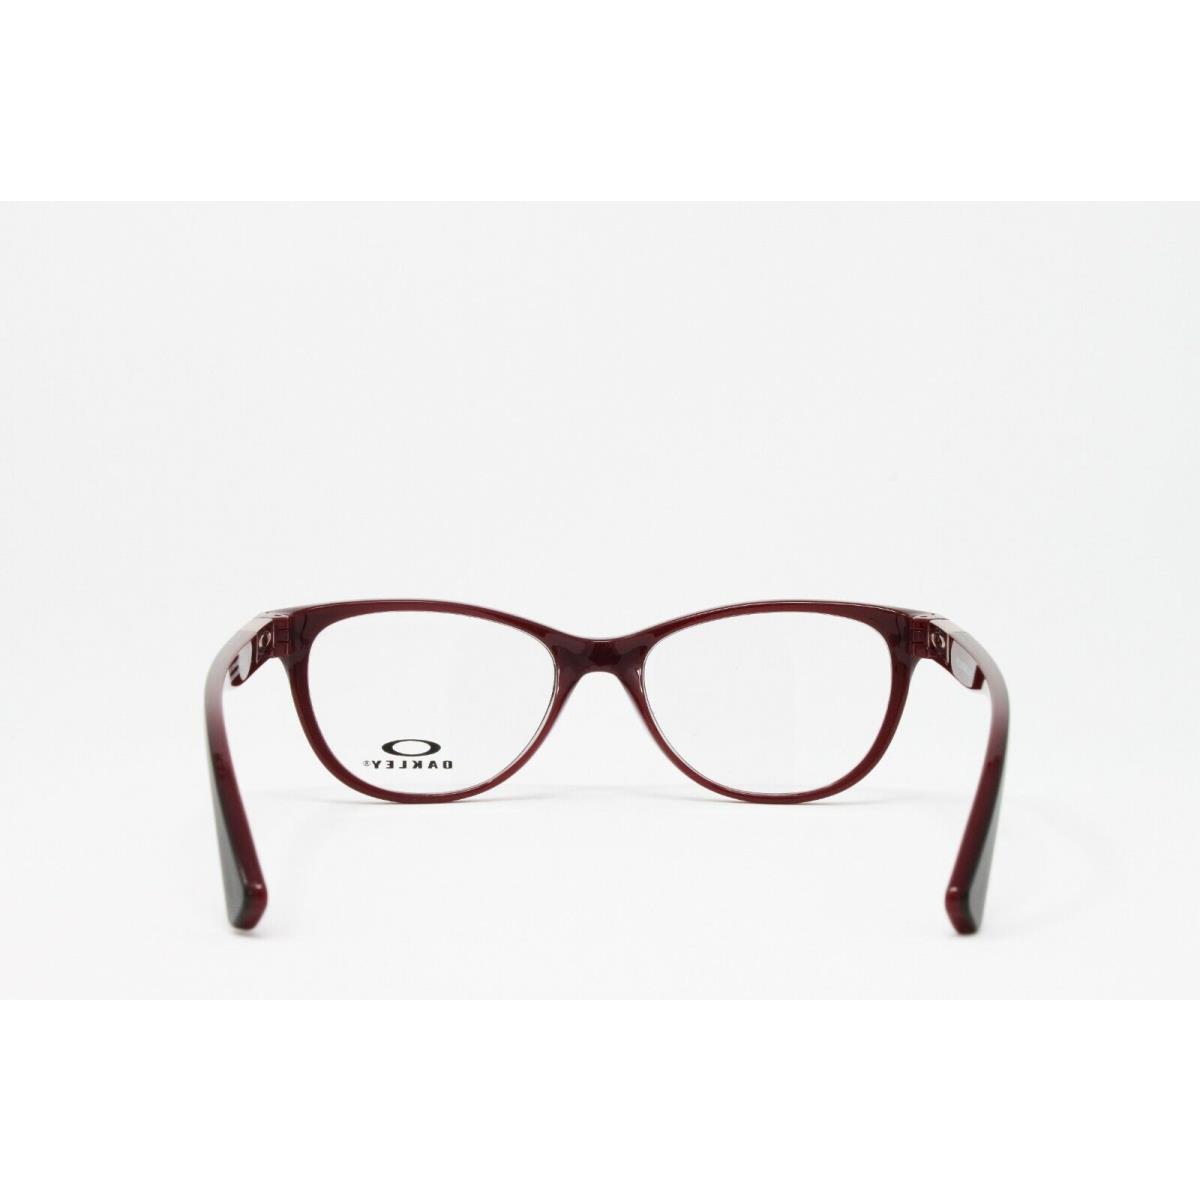 Oakley eyeglasses Optical Plungeline - Black Frame